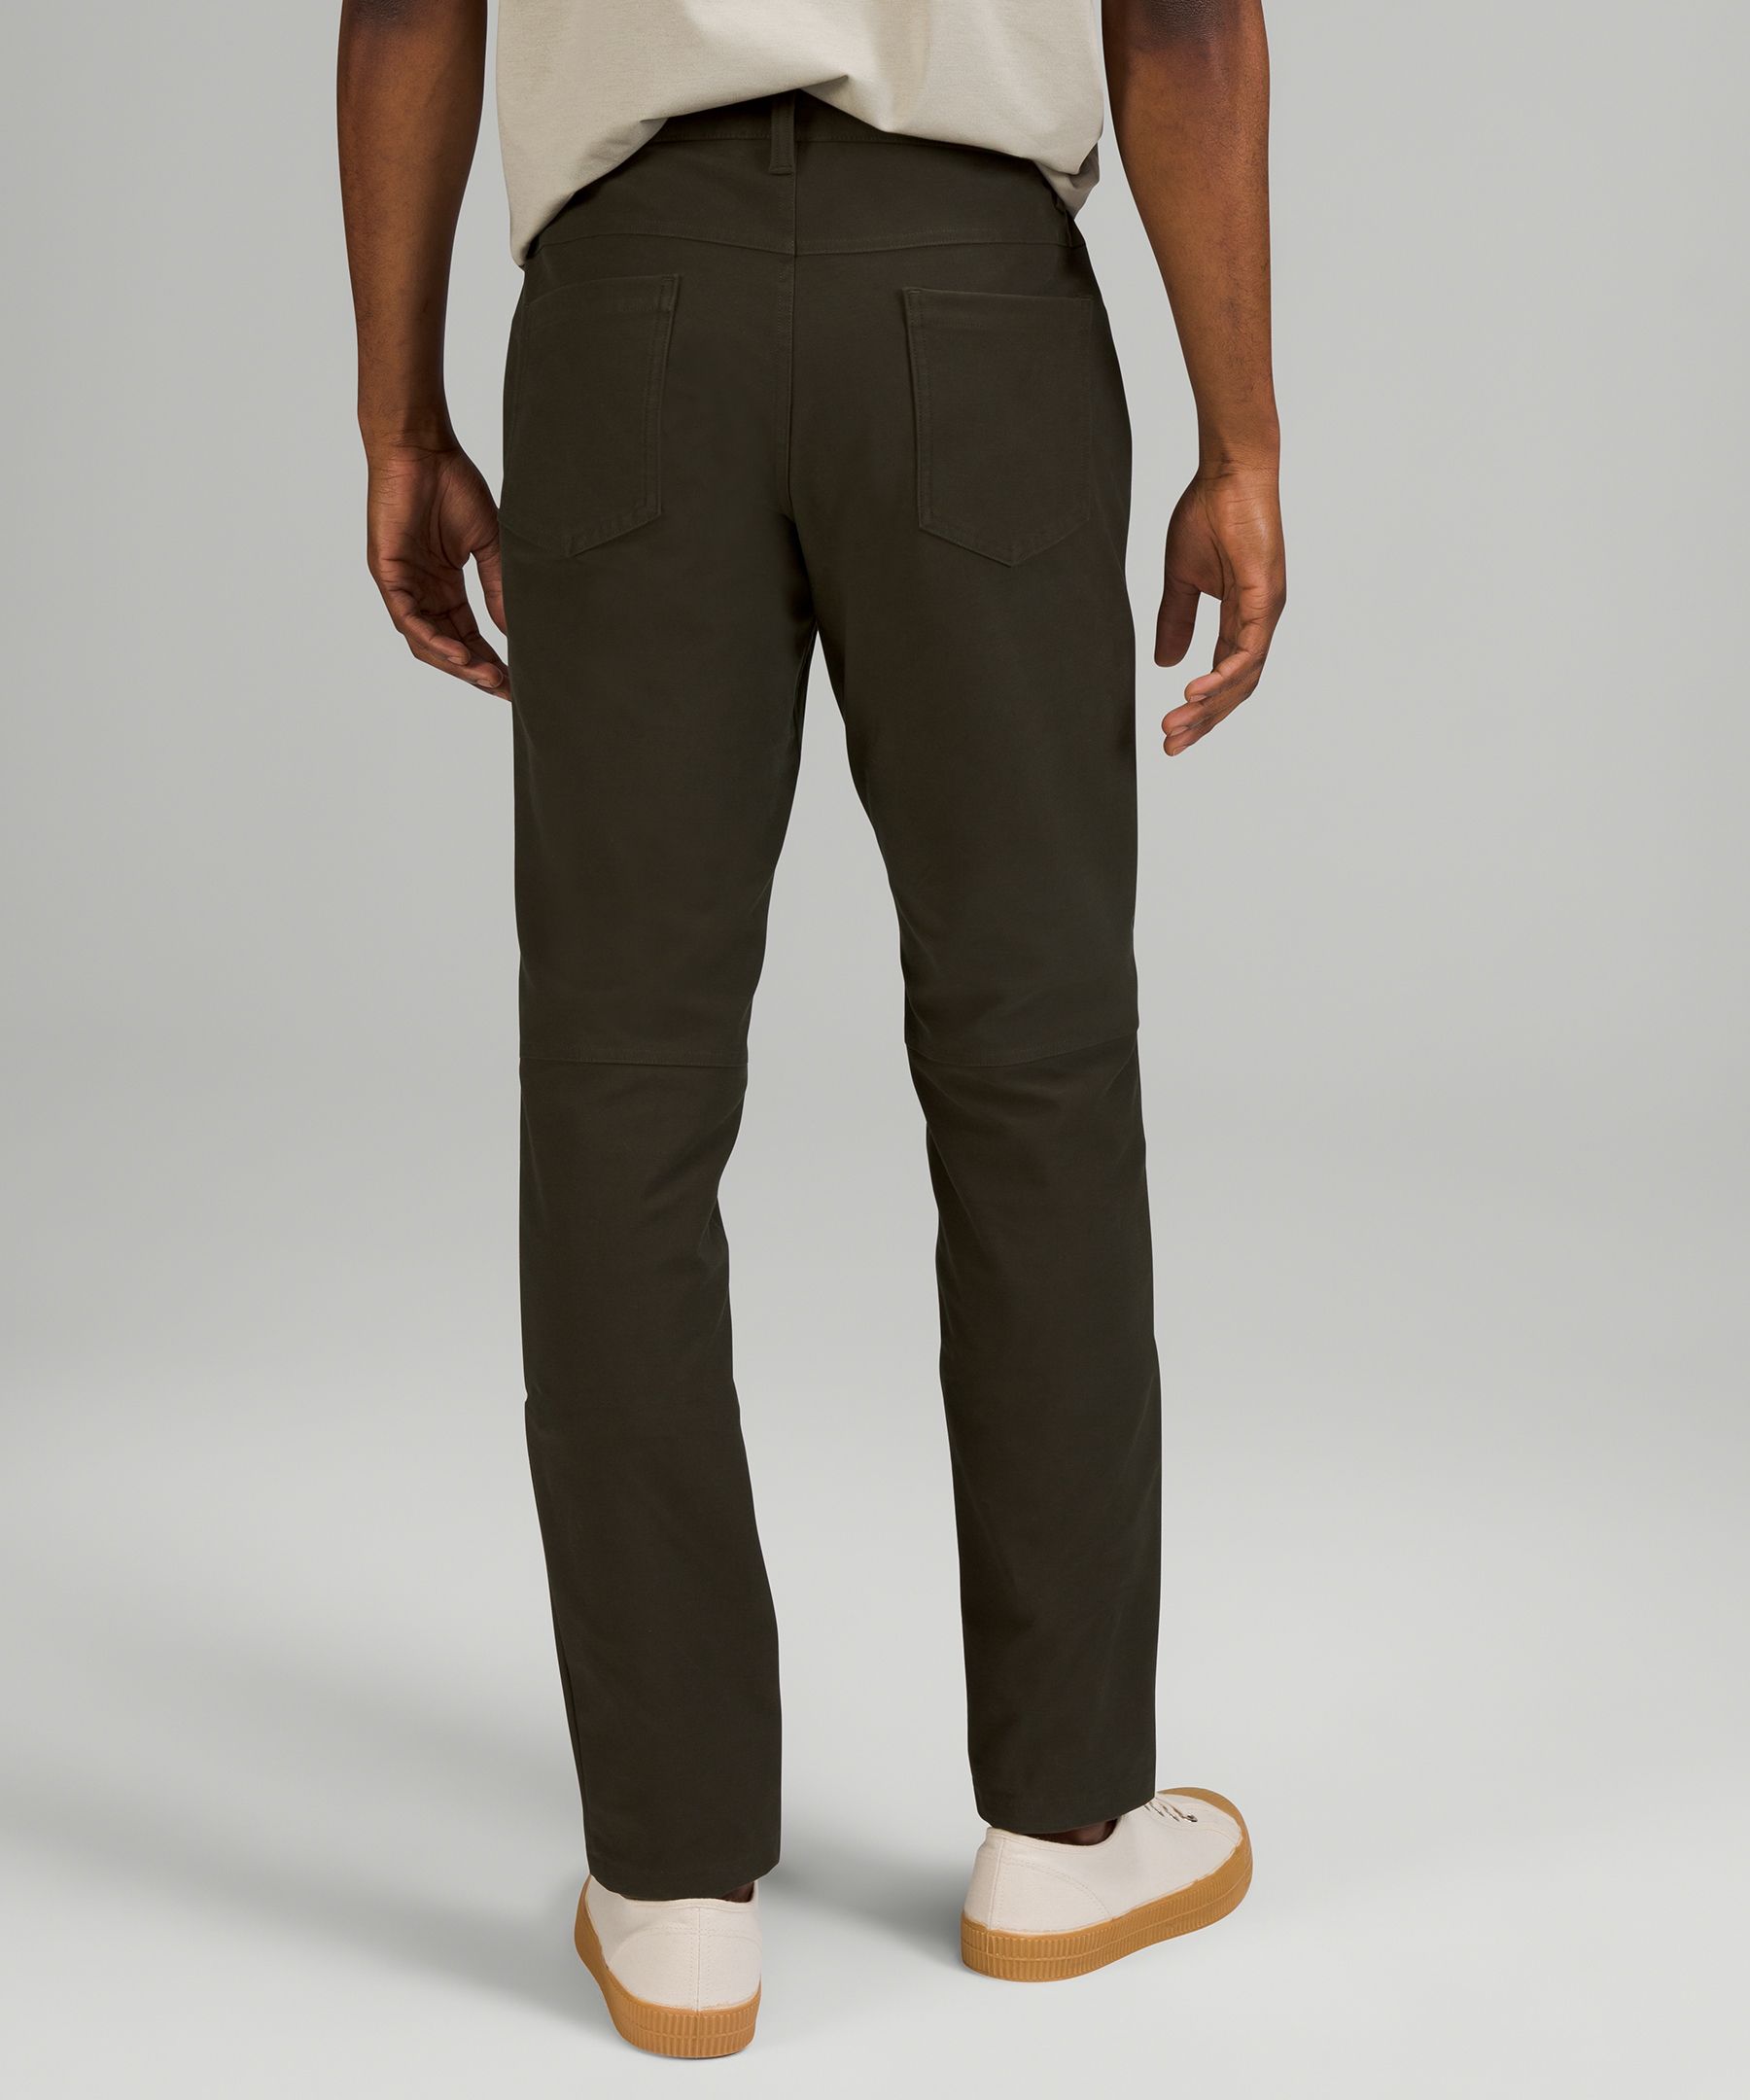 ABC Slim-Fit 5 Pocket Pant 34 *Utilitech, Men's Trousers